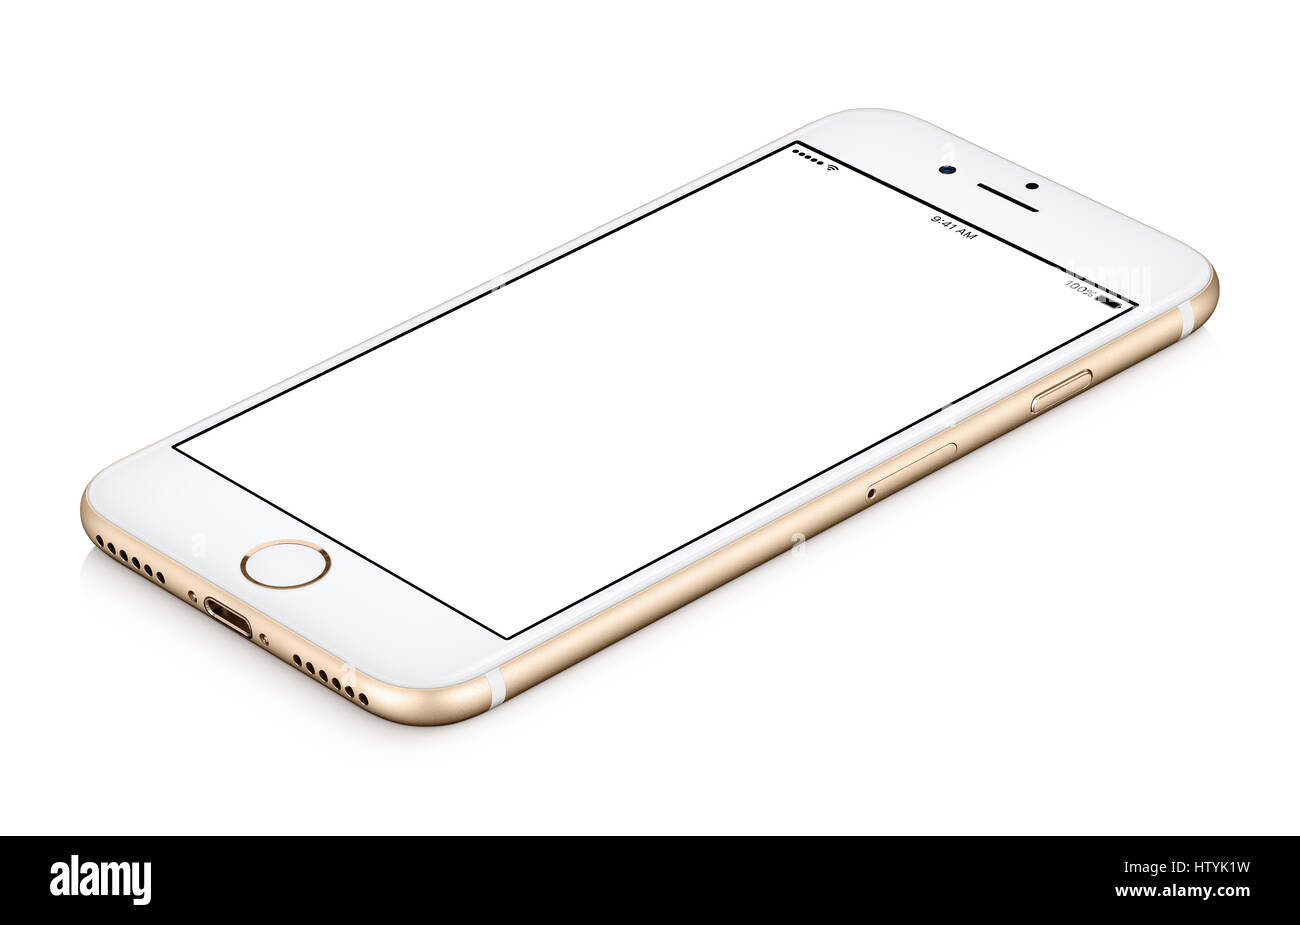 Oro mobile smart phone mock up ruotato in senso orario si trova sulla superficie con schermo vuoto isolato su sfondo bianco. Foto Stock